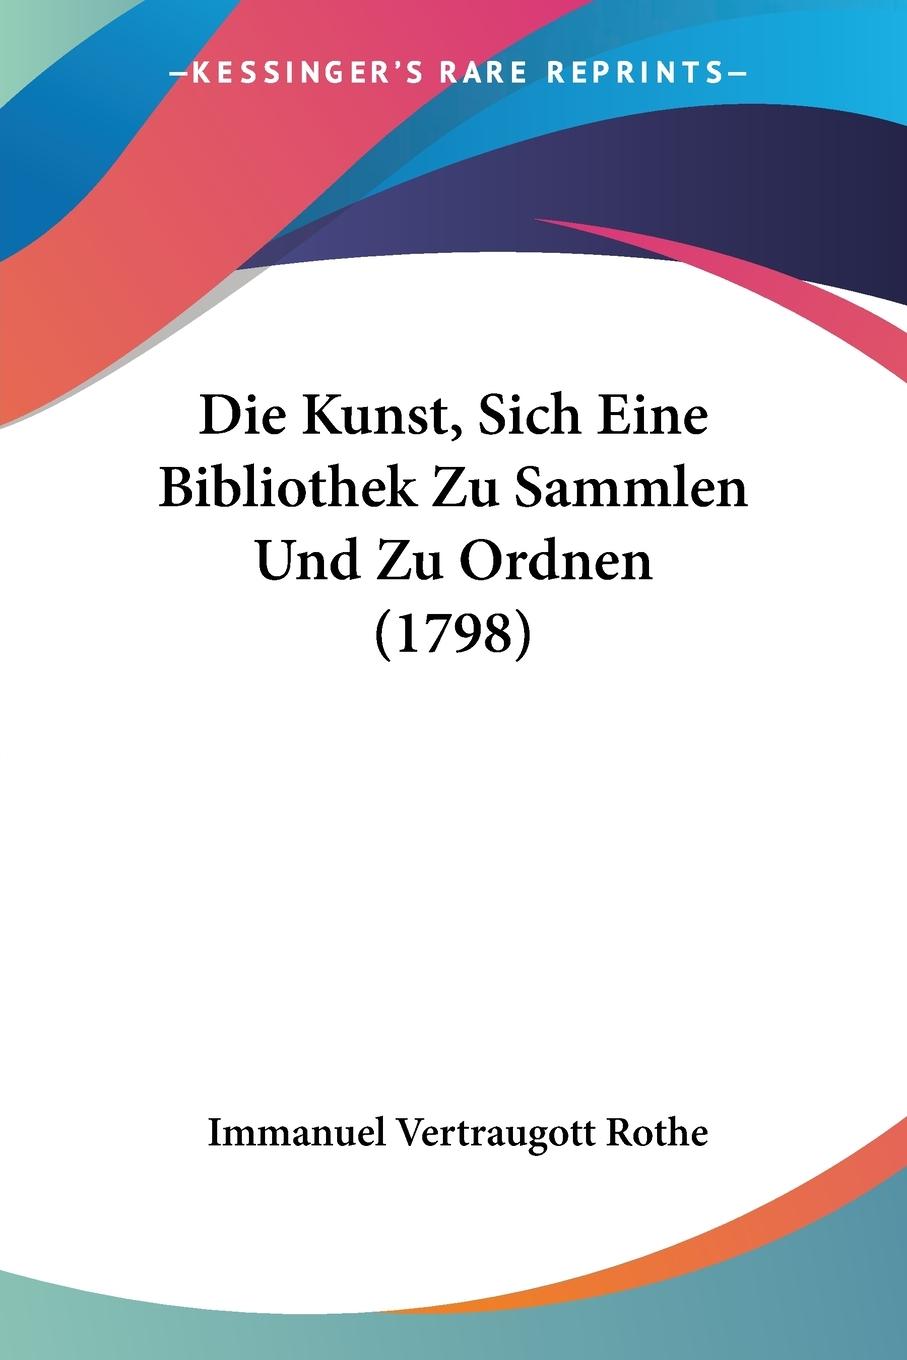 Die Kunst, Sich Eine Bibliothek Zu Sammlen Und Zu Ordnen (1798) - Rothe, Immanuel Vertraugott